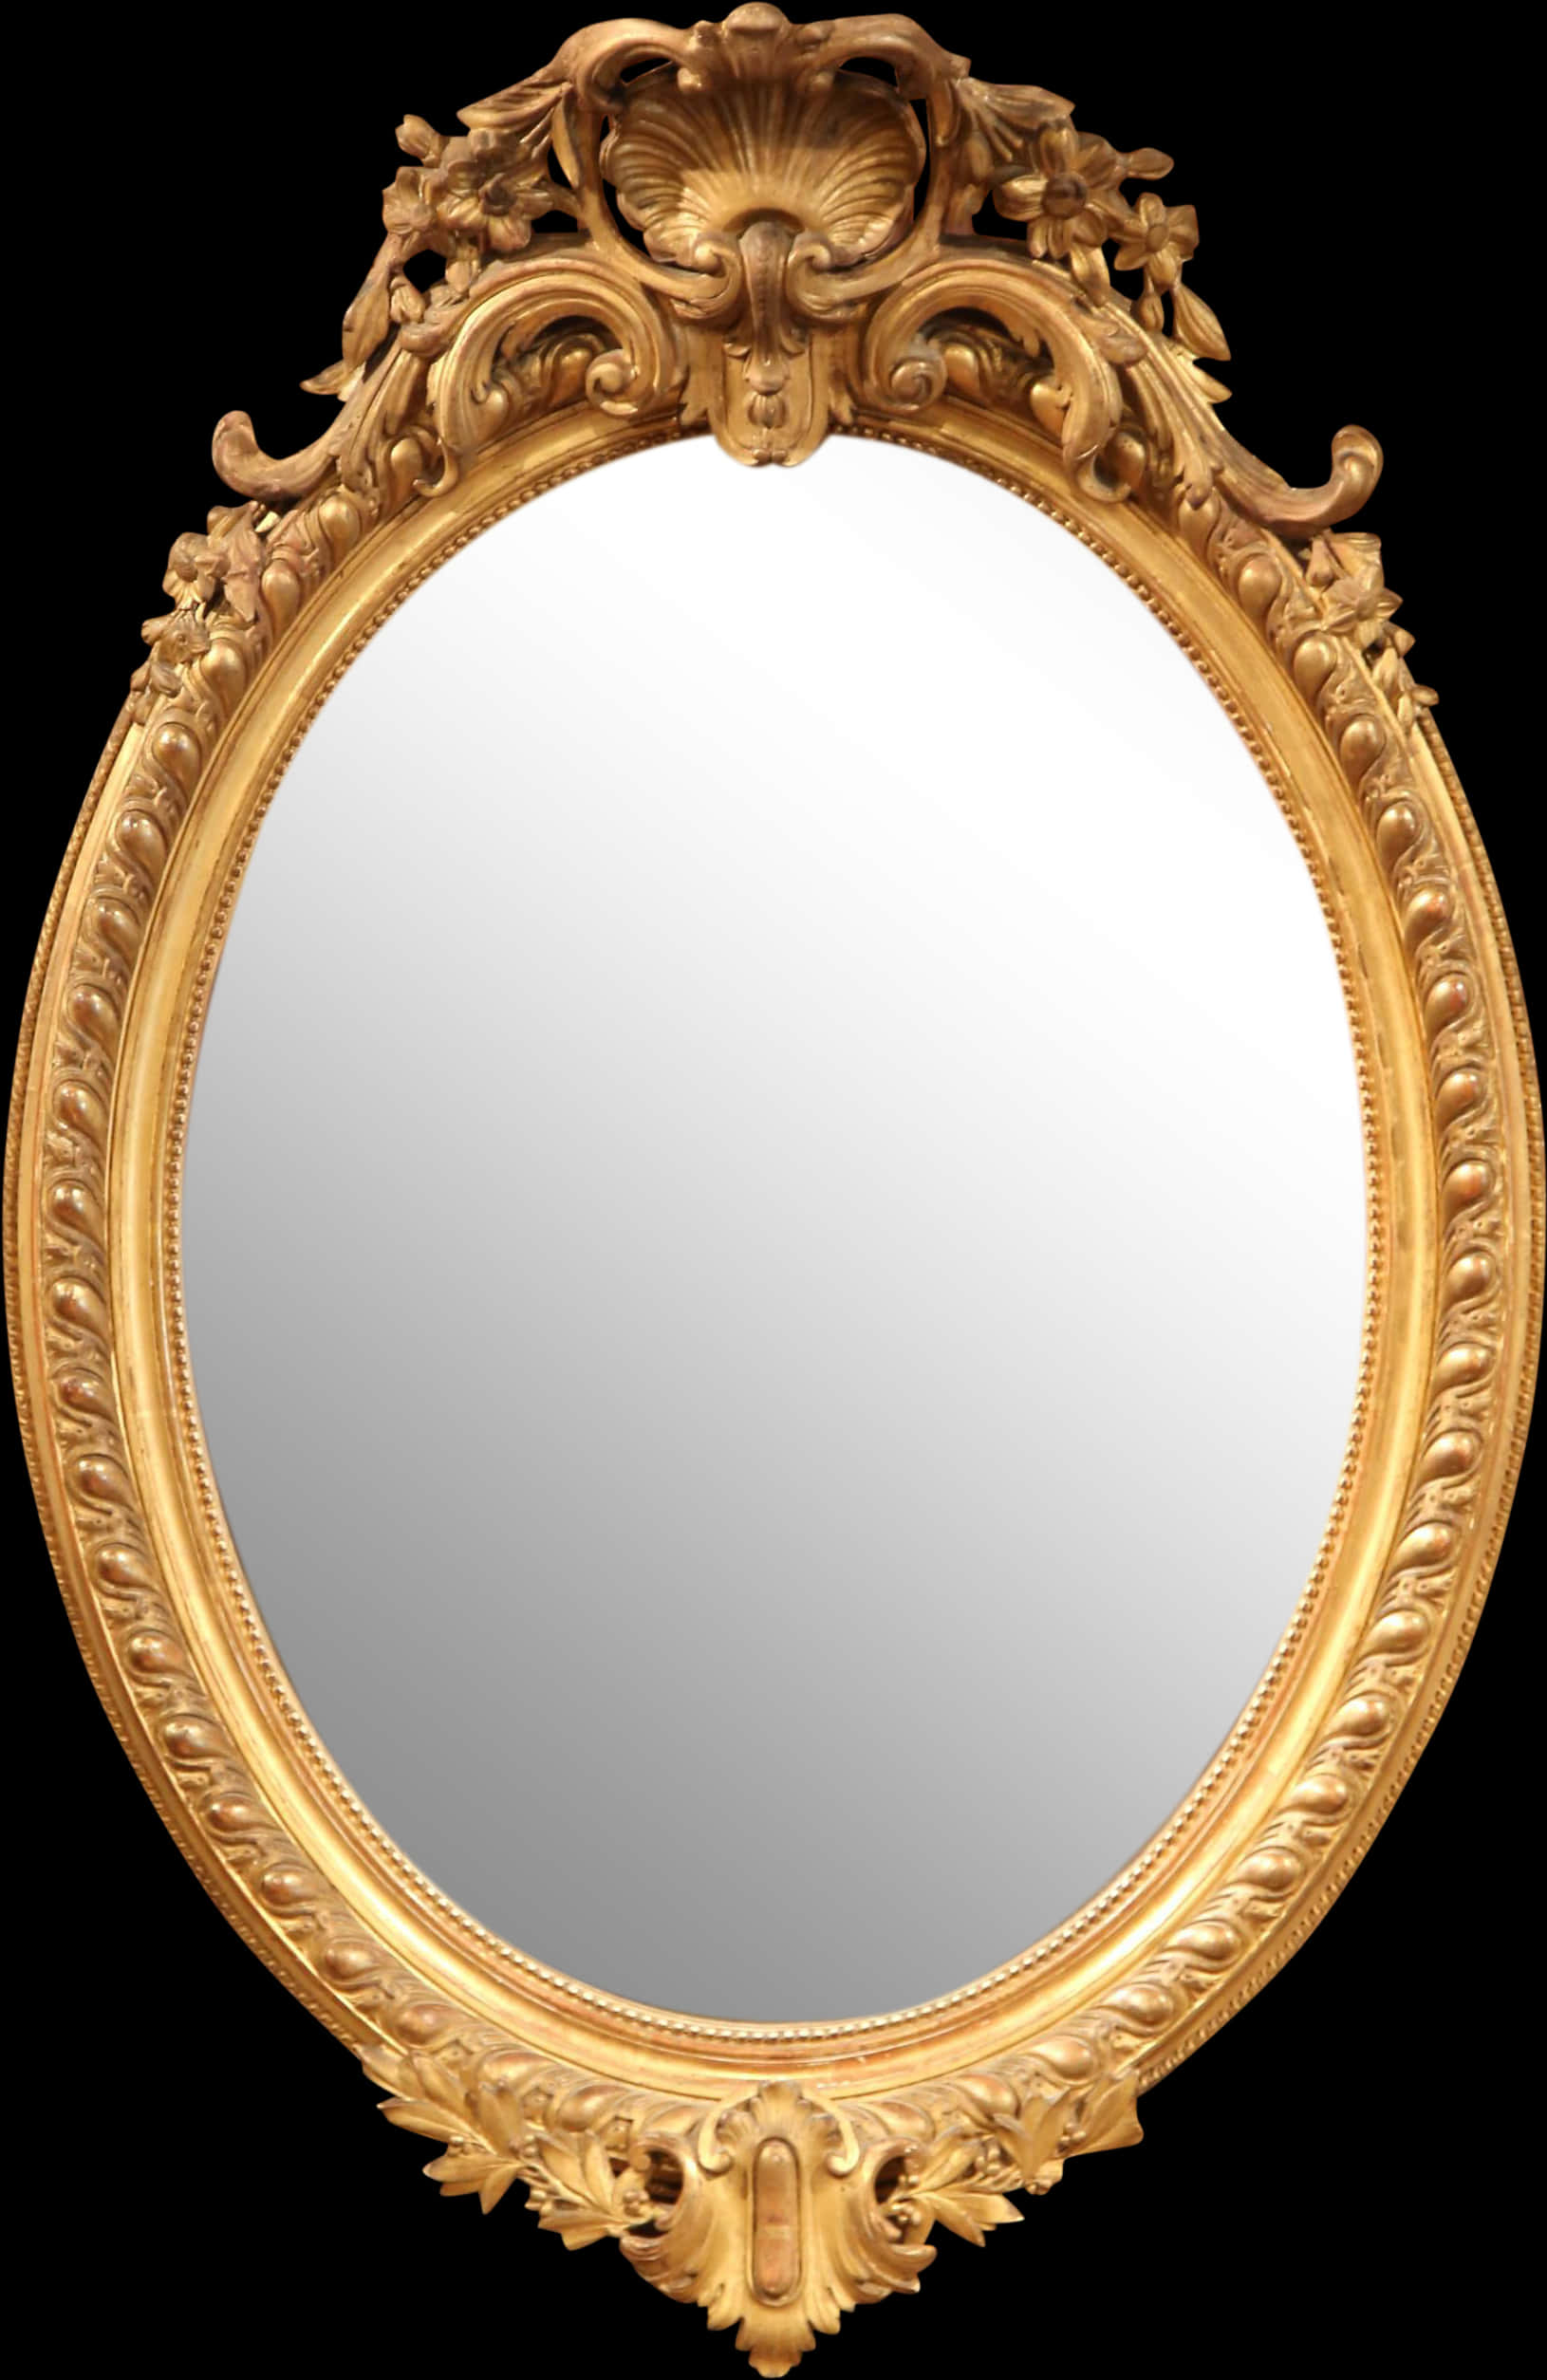 Ornate Golden Frame Mirror.jpg PNG image